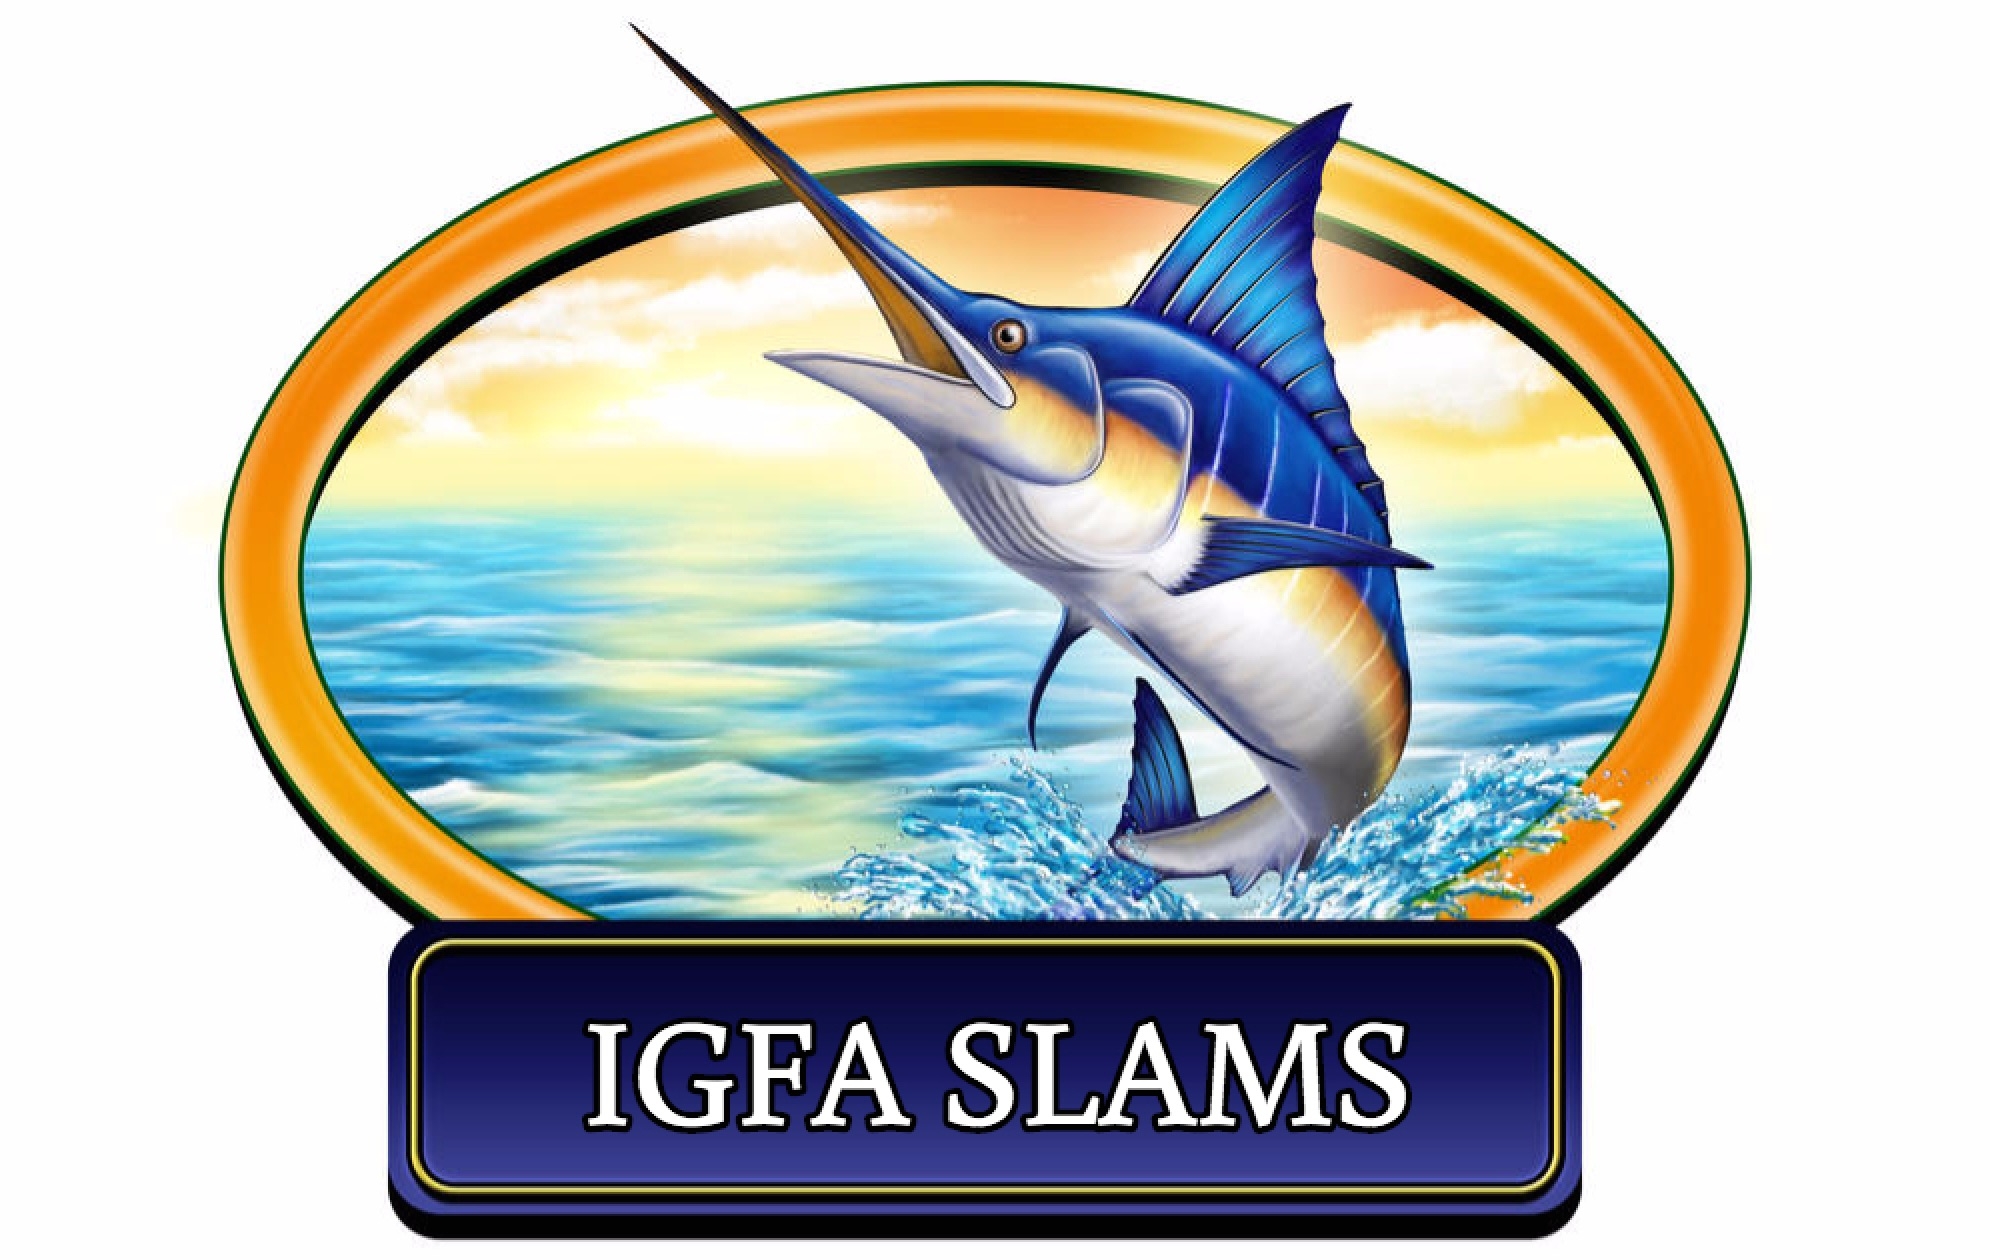 IGFA saltwater fishing slams